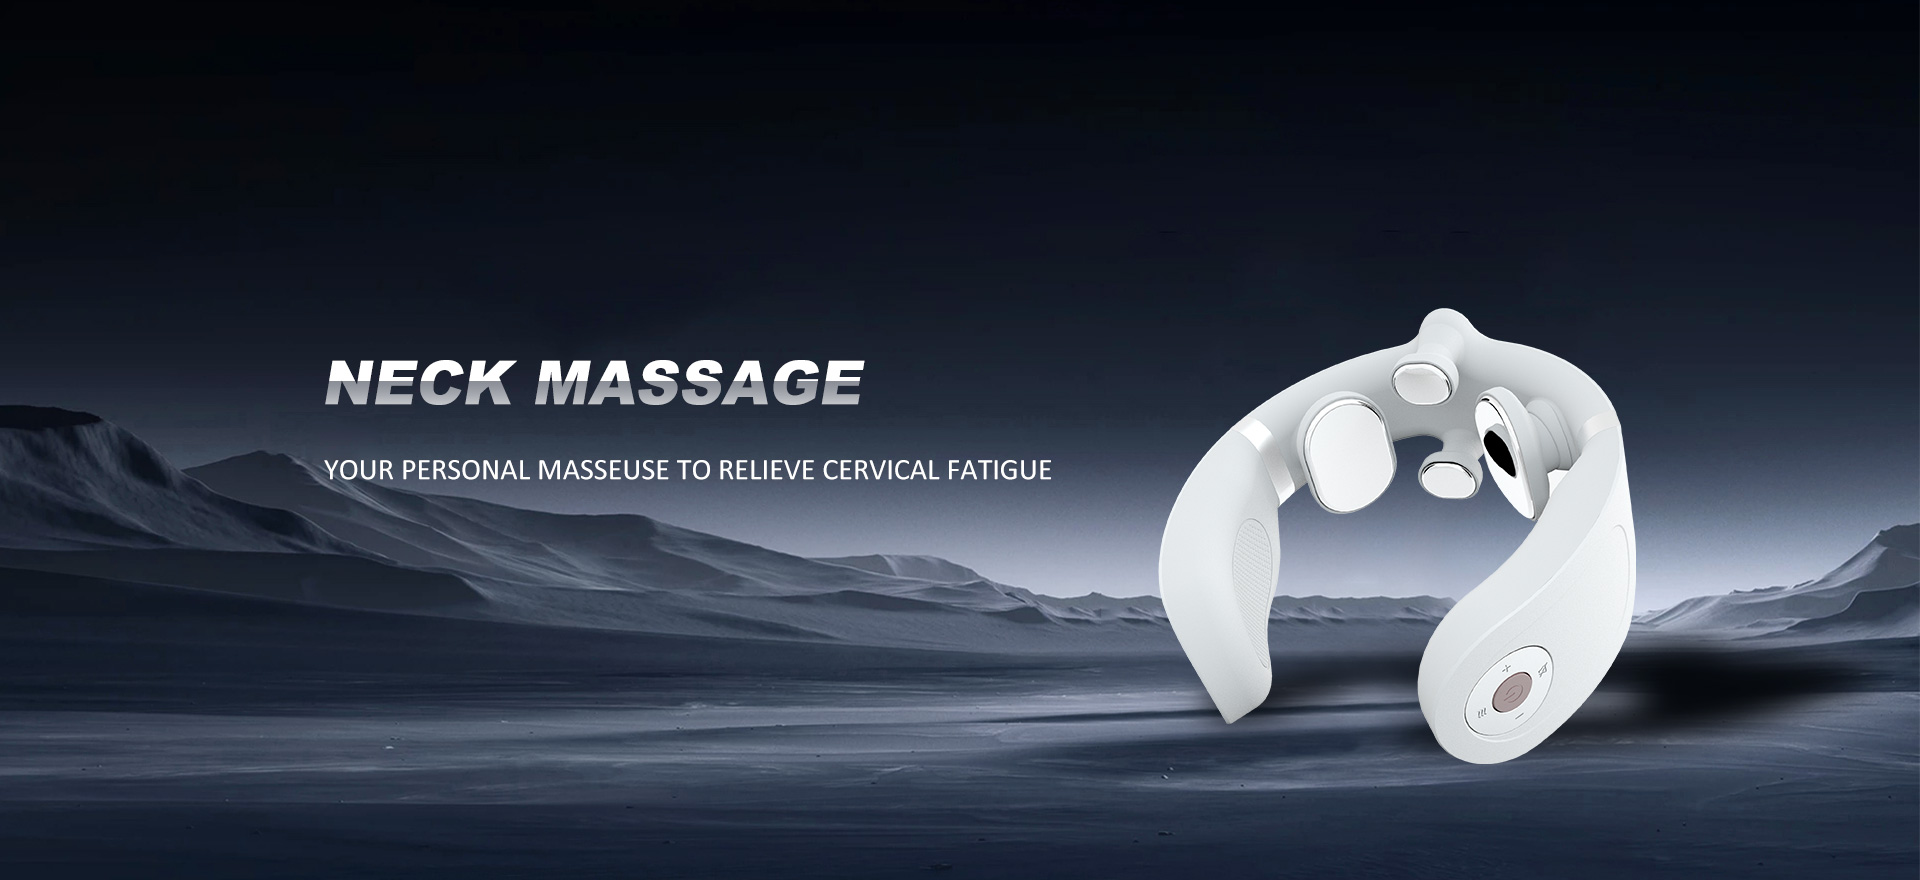 Produttori e fornitori di massaggi al collo in Cina